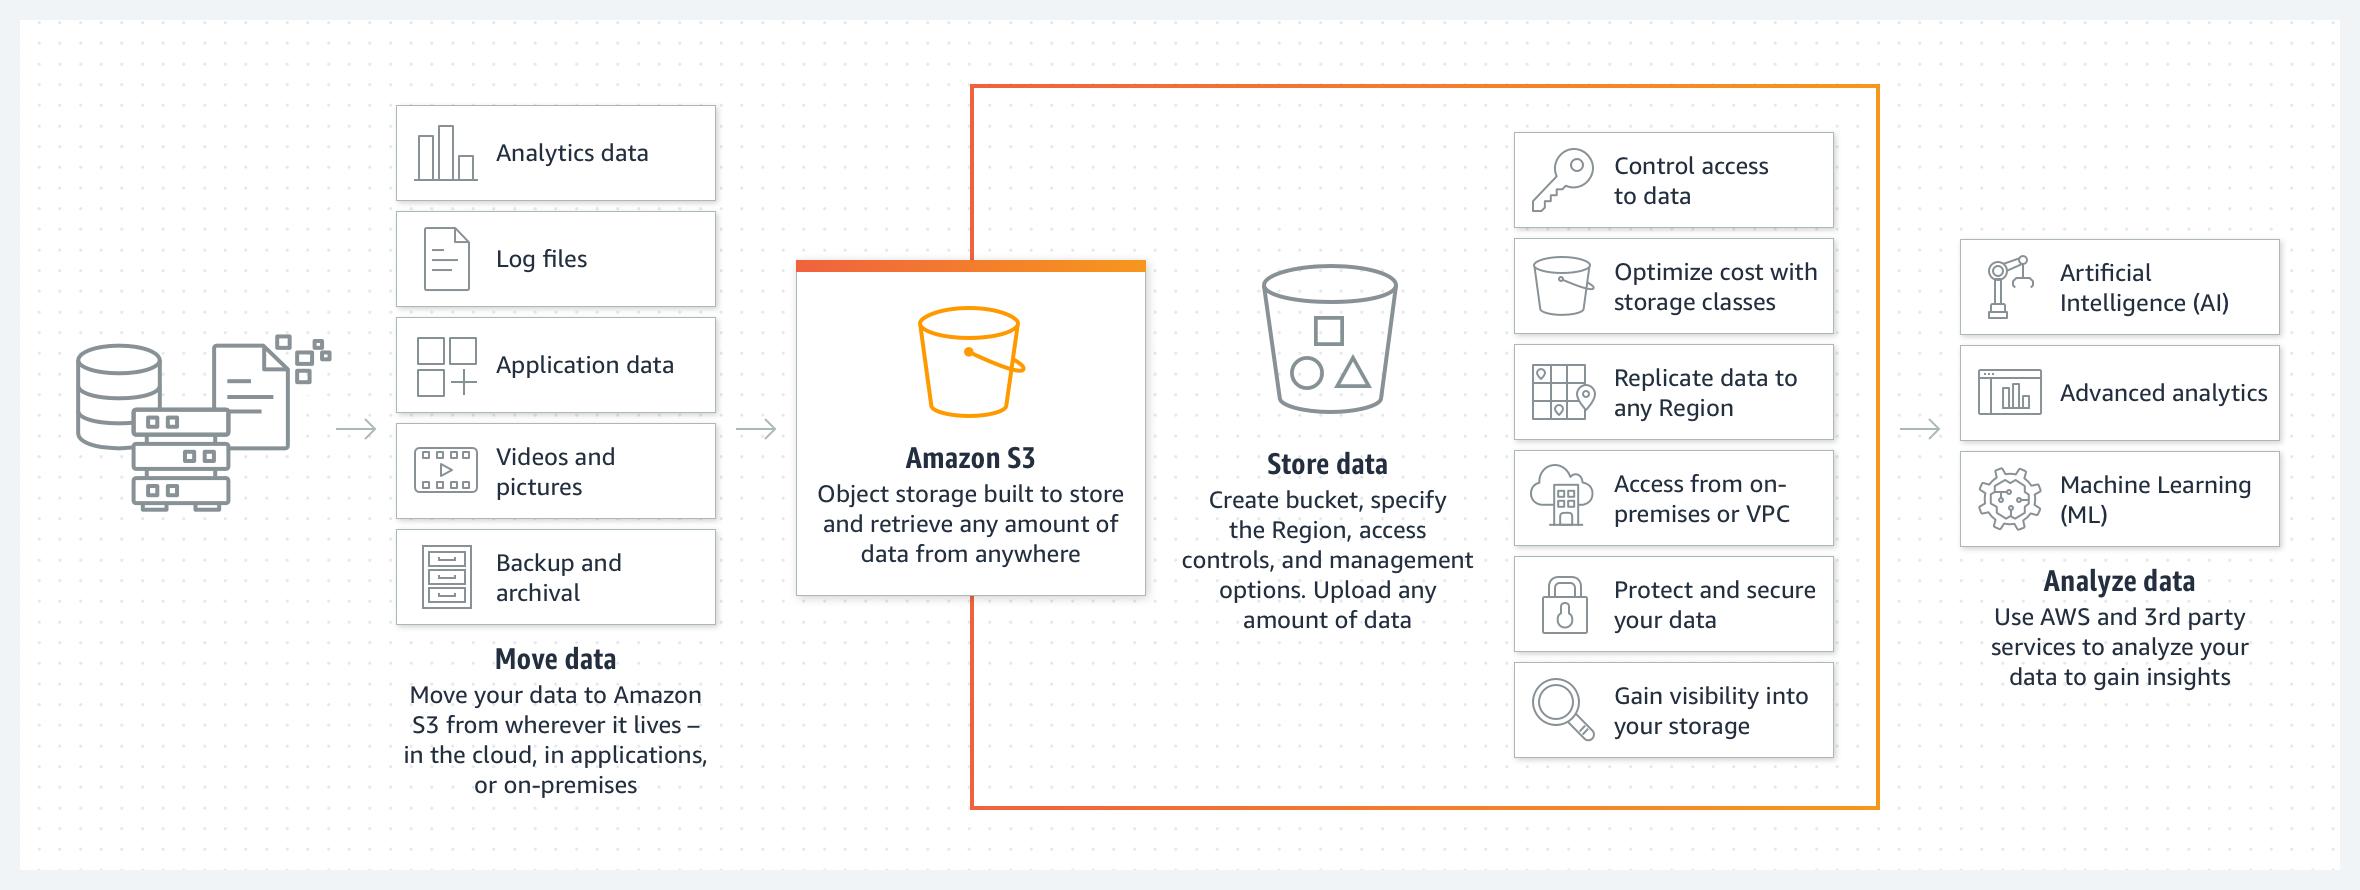 رسم تخطيطي يوضح كيفية نقل البيانات وتخزينها وتحليلها من خلال Amazon S3